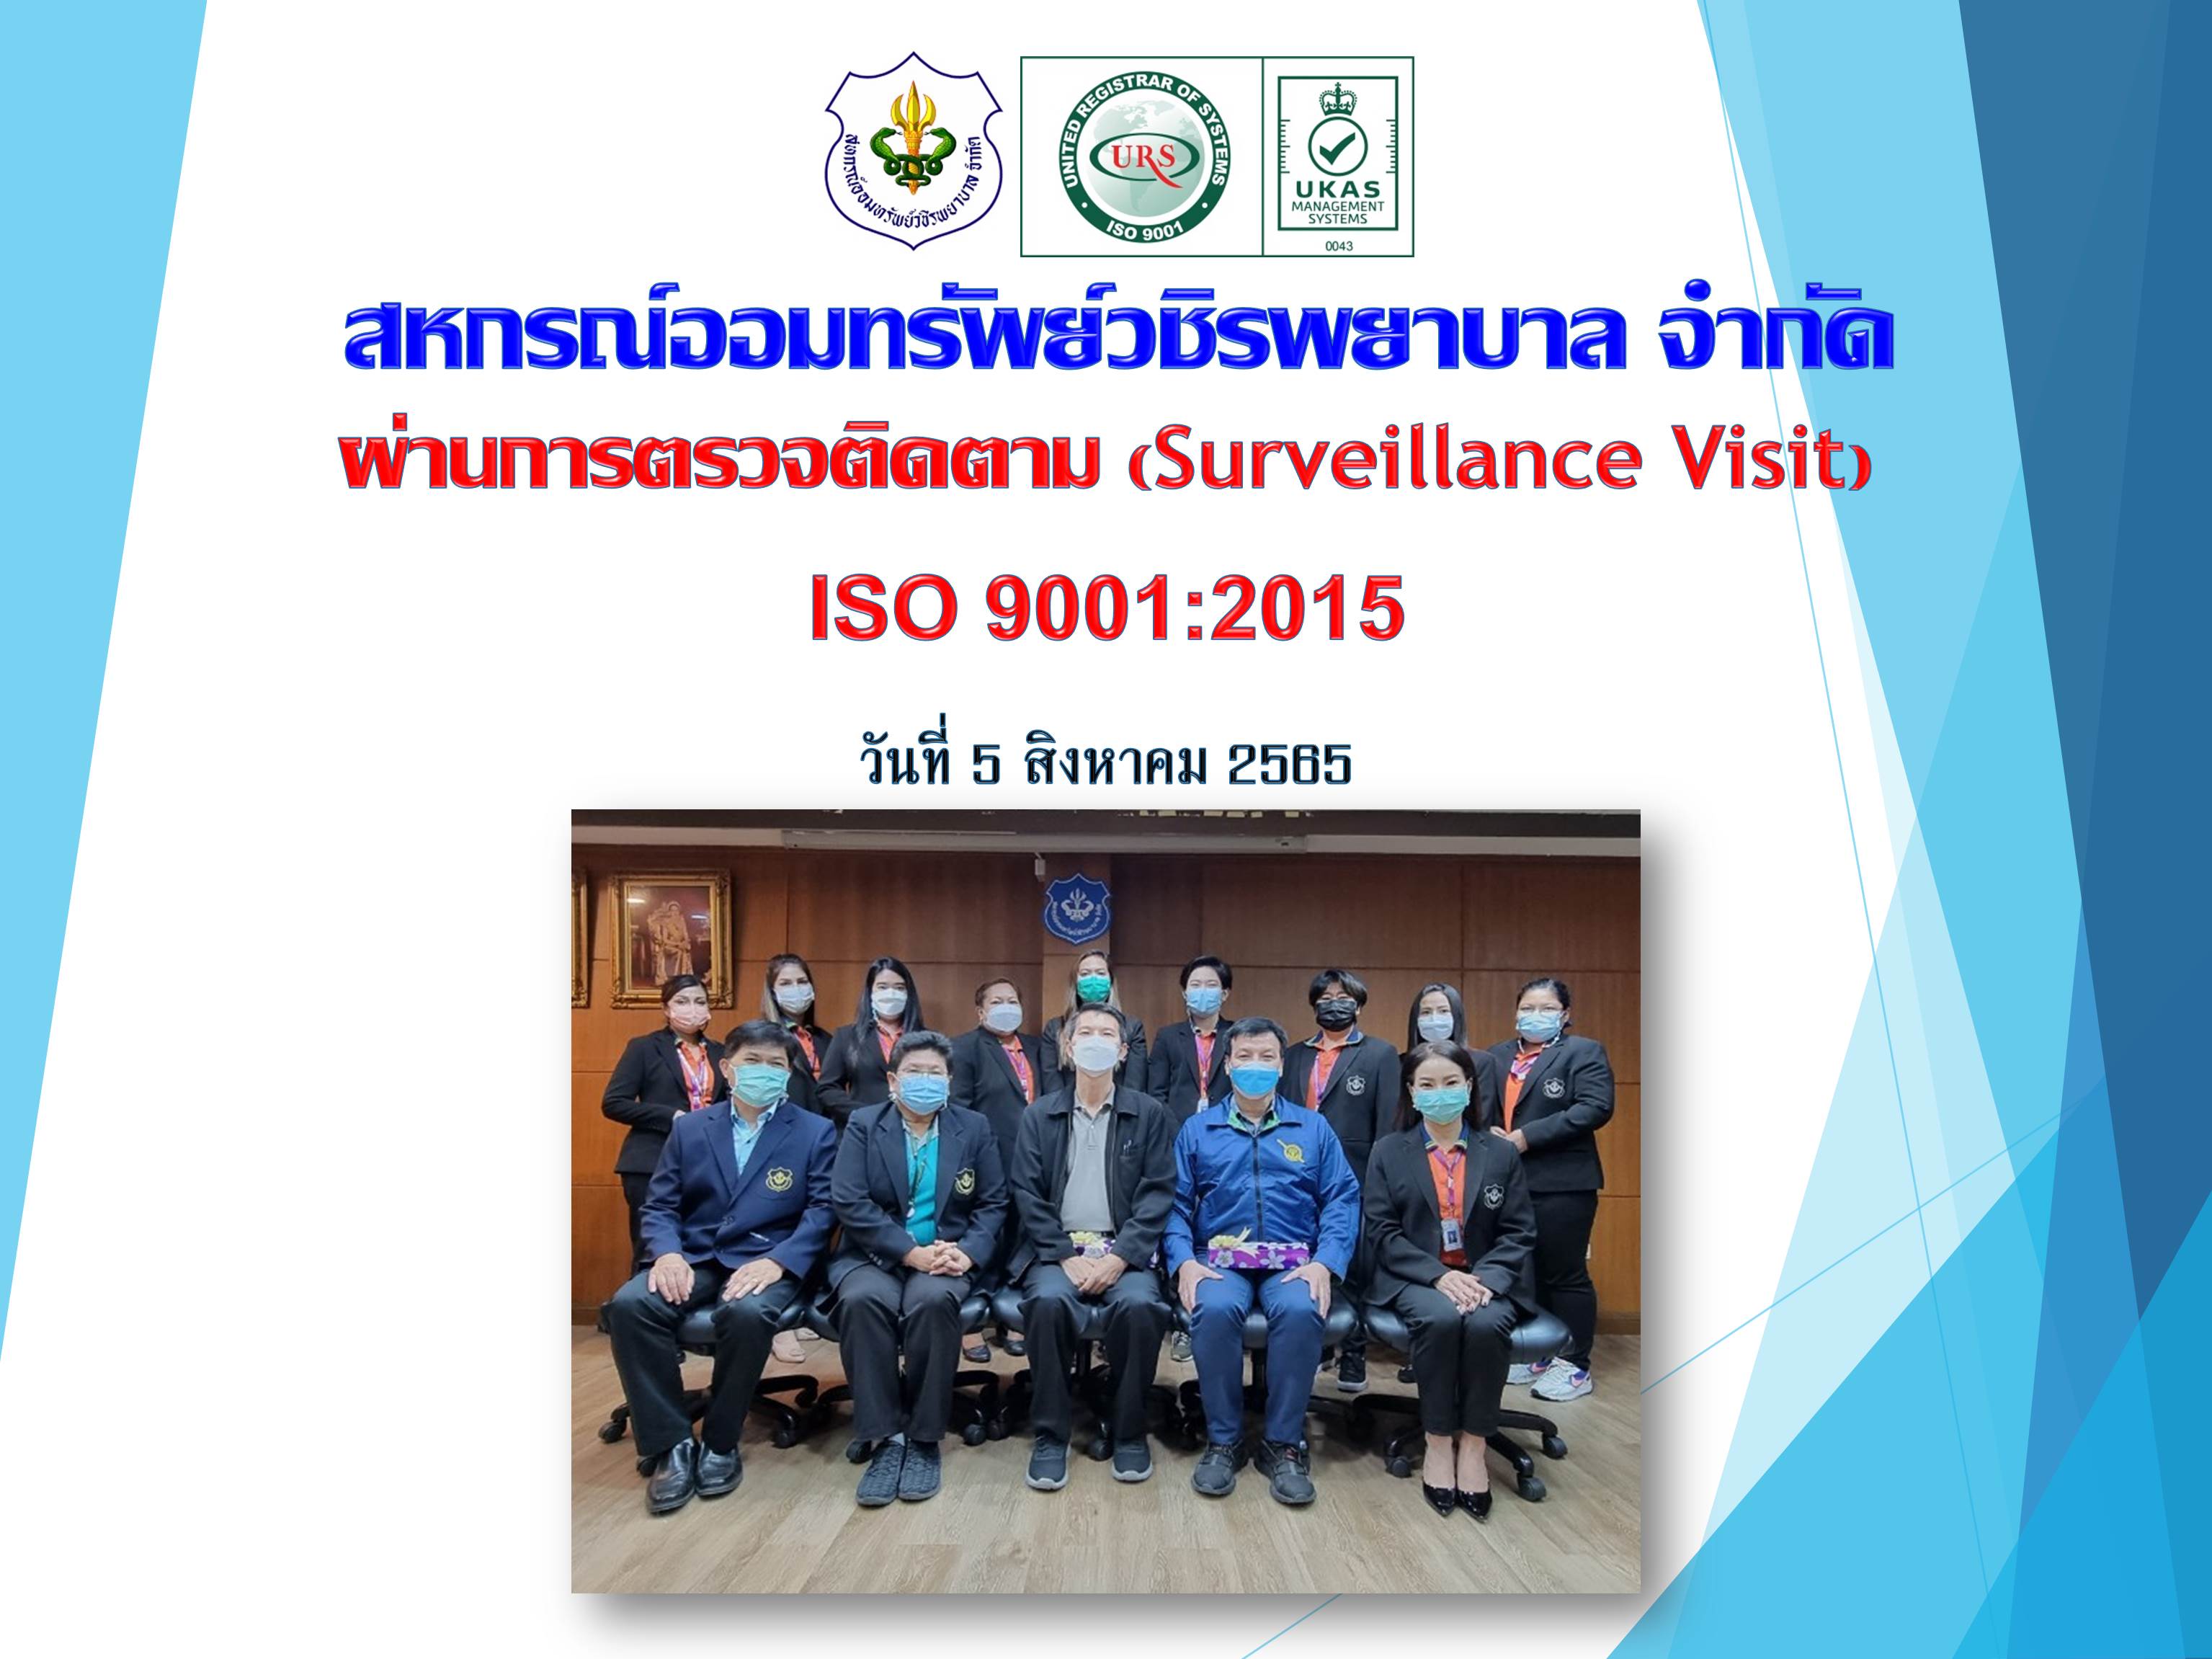 สหกรณ์ฯ ผ่านการตรวจติดตาม Surveillance Visit ISO 9001:2015